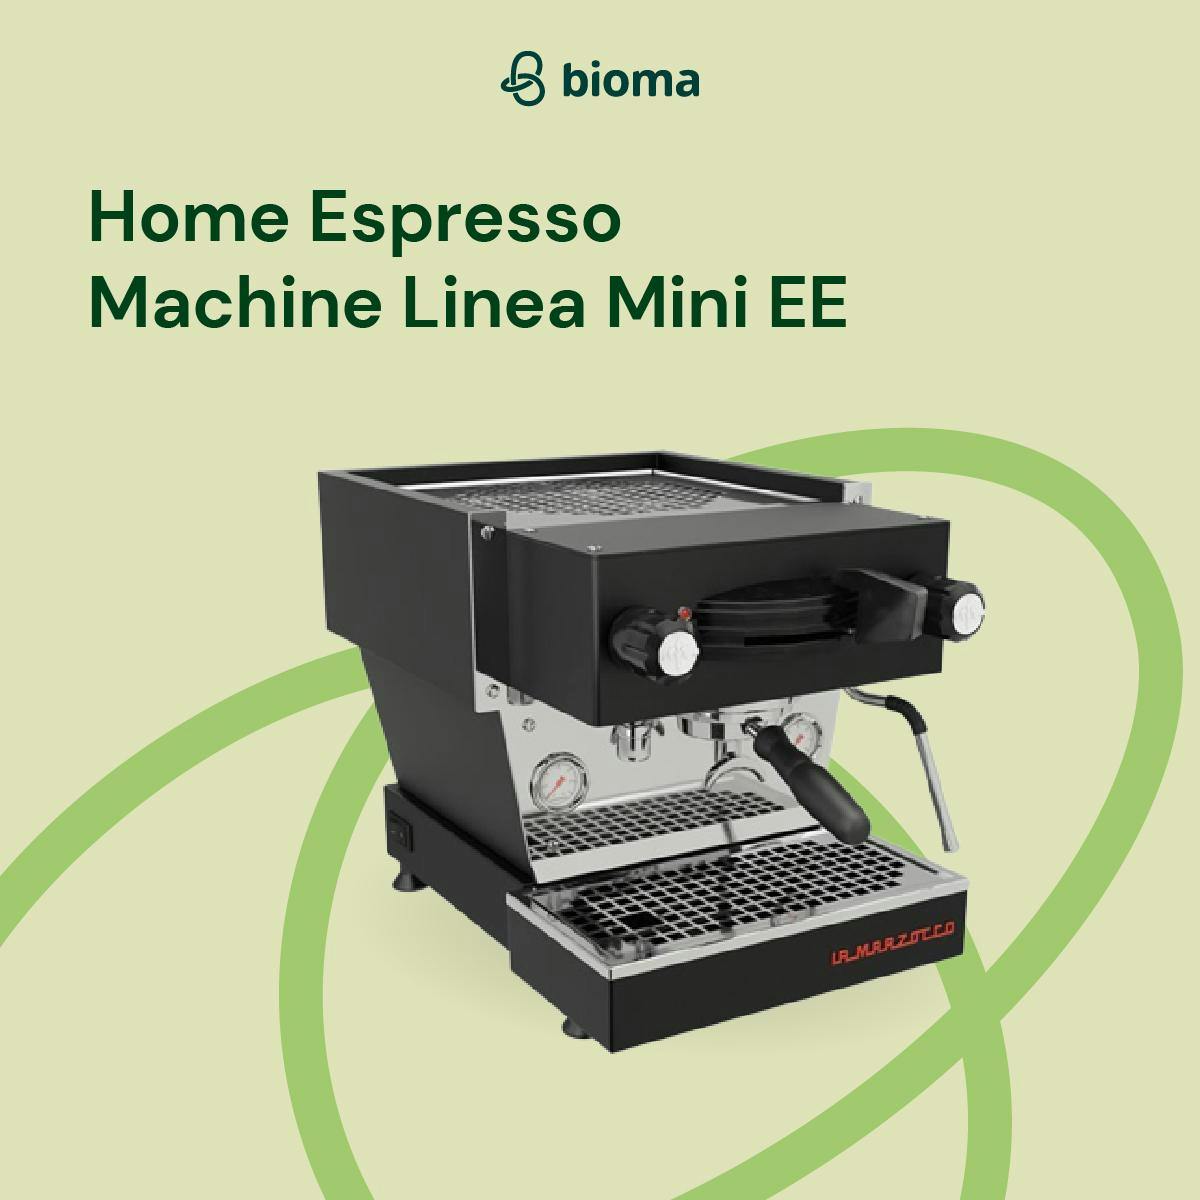 Home Espresso Machine Linea Mini EE